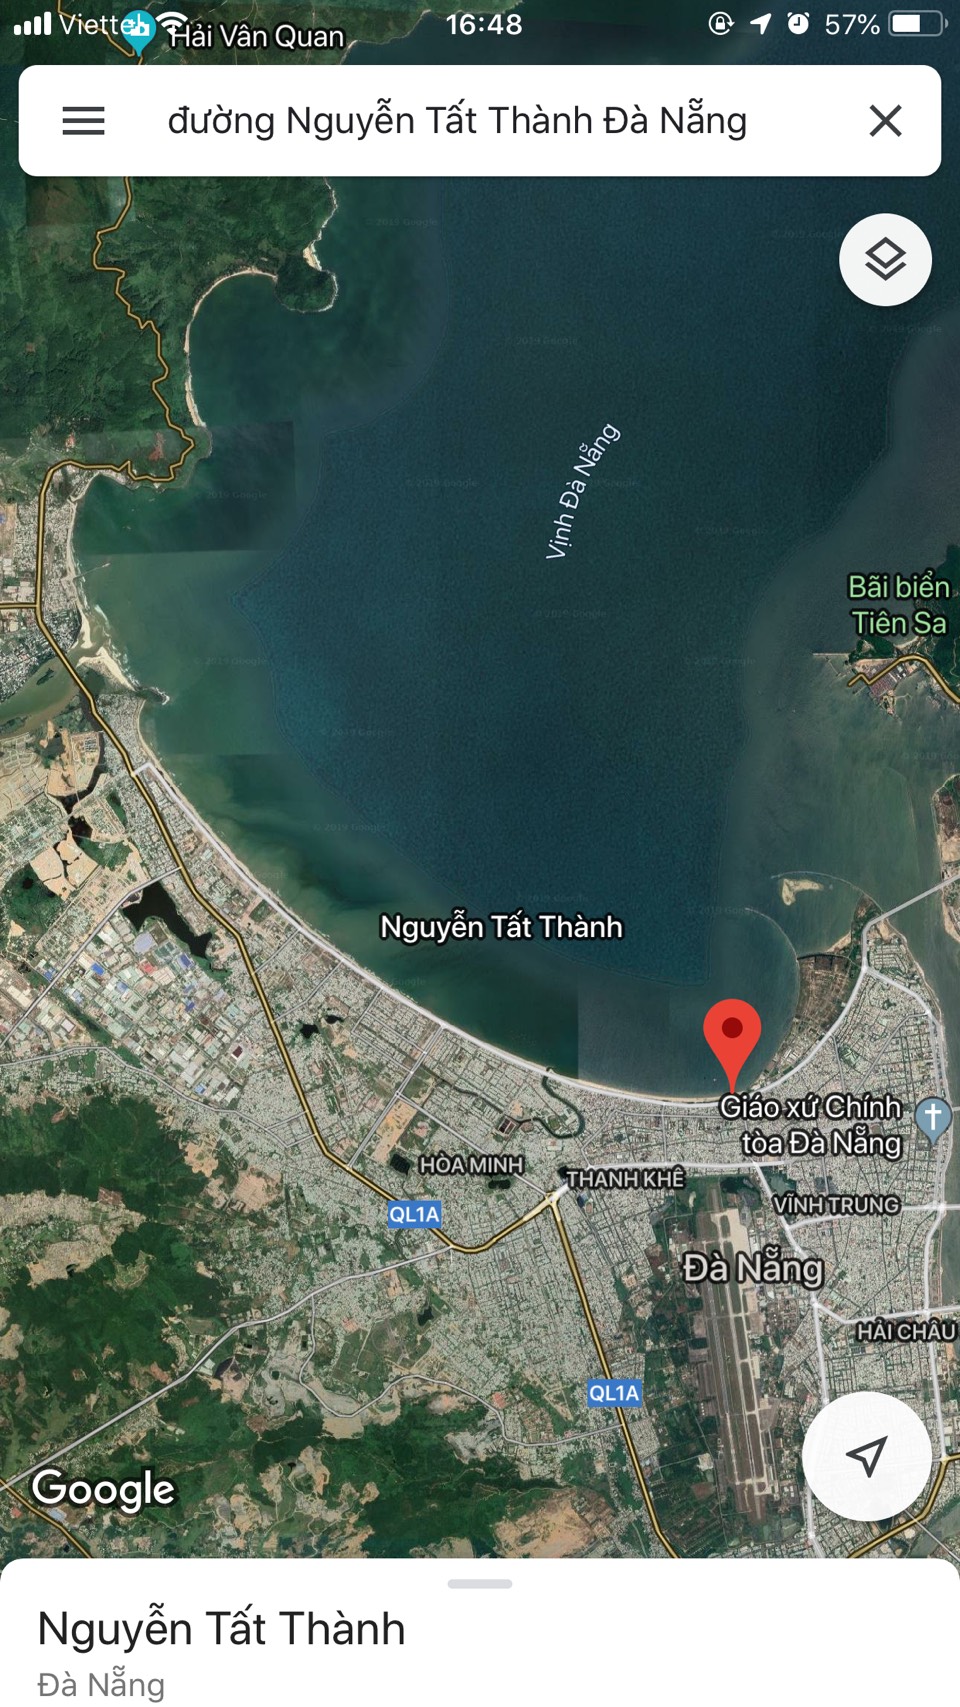 Bán 250 m2 đất mặt biển Nguyễn Tất Thành,Đà Nẵng giá rẻ,xây cao tầng gần dự án Novaland.0905.606.910
 194490